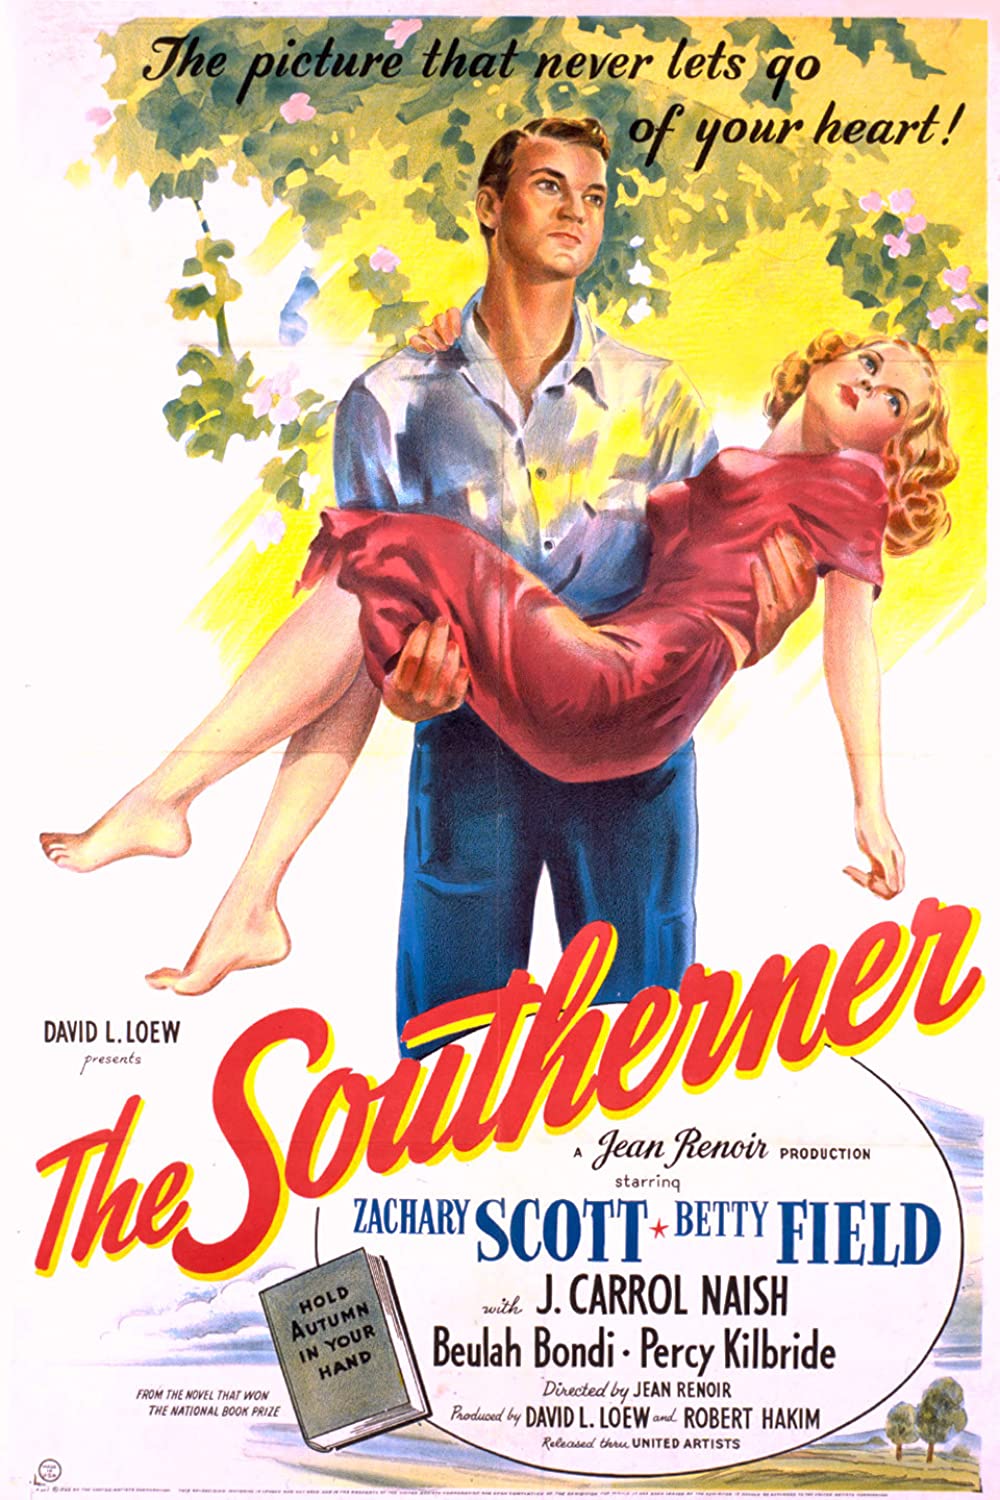 ดูหนังออนไลน์ฟรี The Southerner (1945) เดอะ ซัฑเอินเน็ต